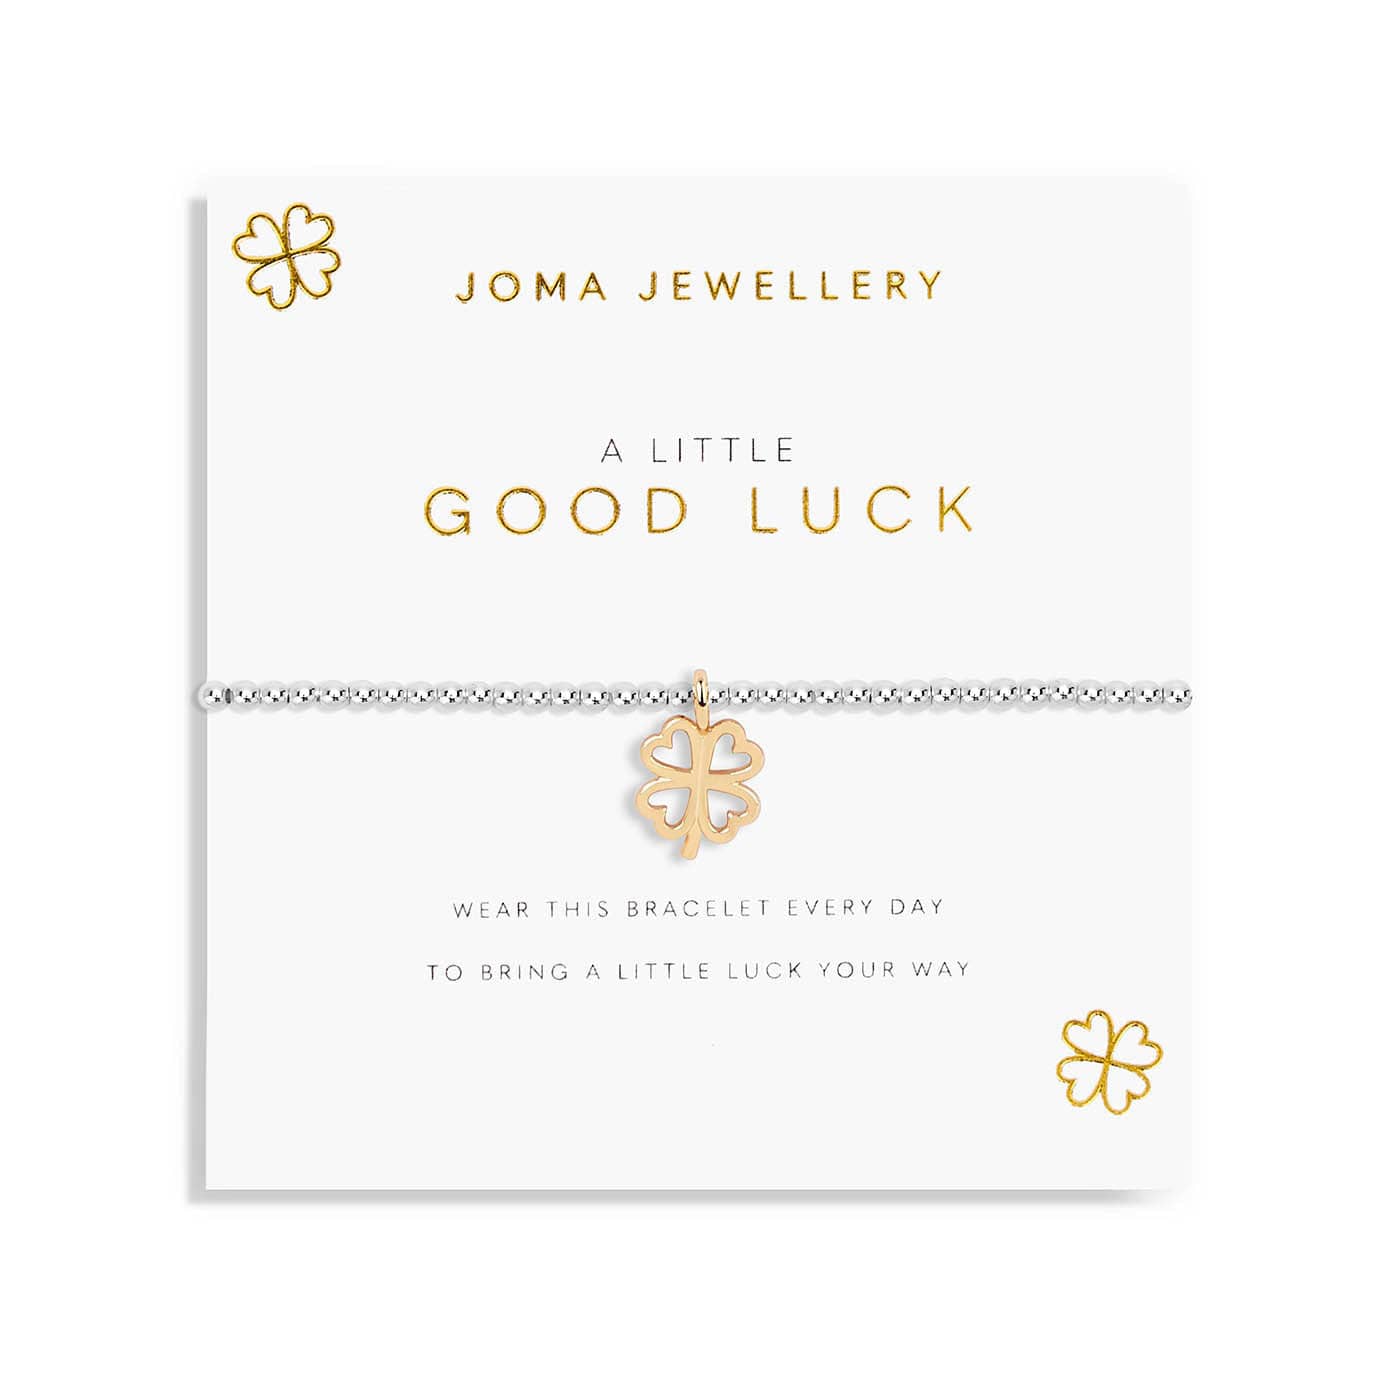 Joma Jewellery Childrens Bracelet Joma Jewellery Childrens Bracelet - A Little Good Luck